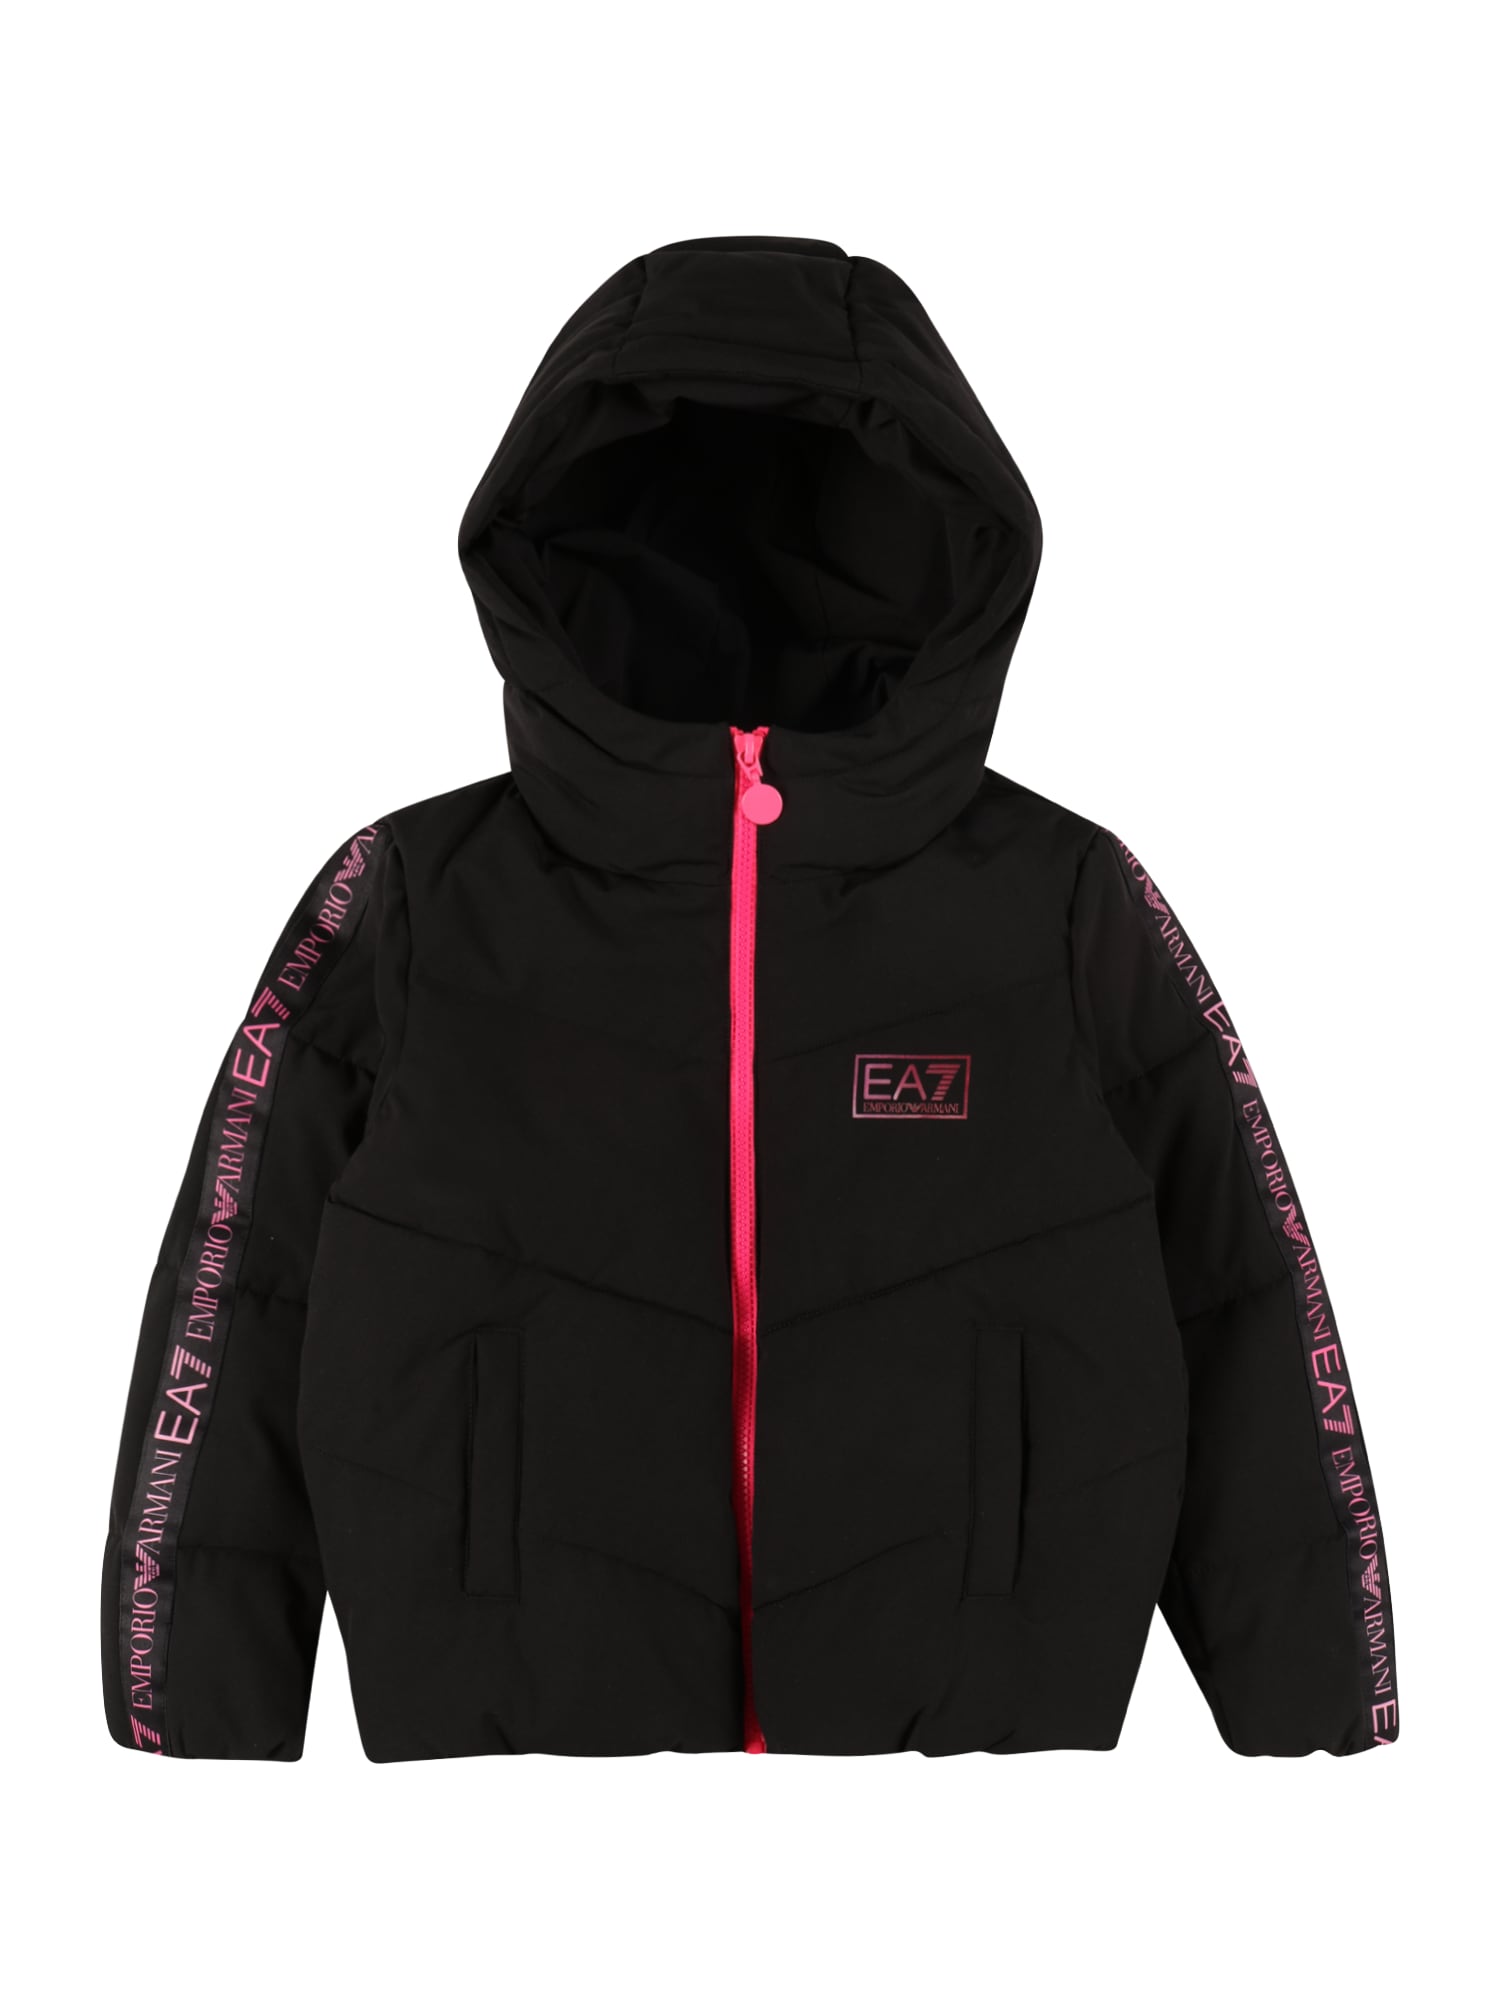 EA7 Emporio Armani Zimska jakna  svetlo roza / črna